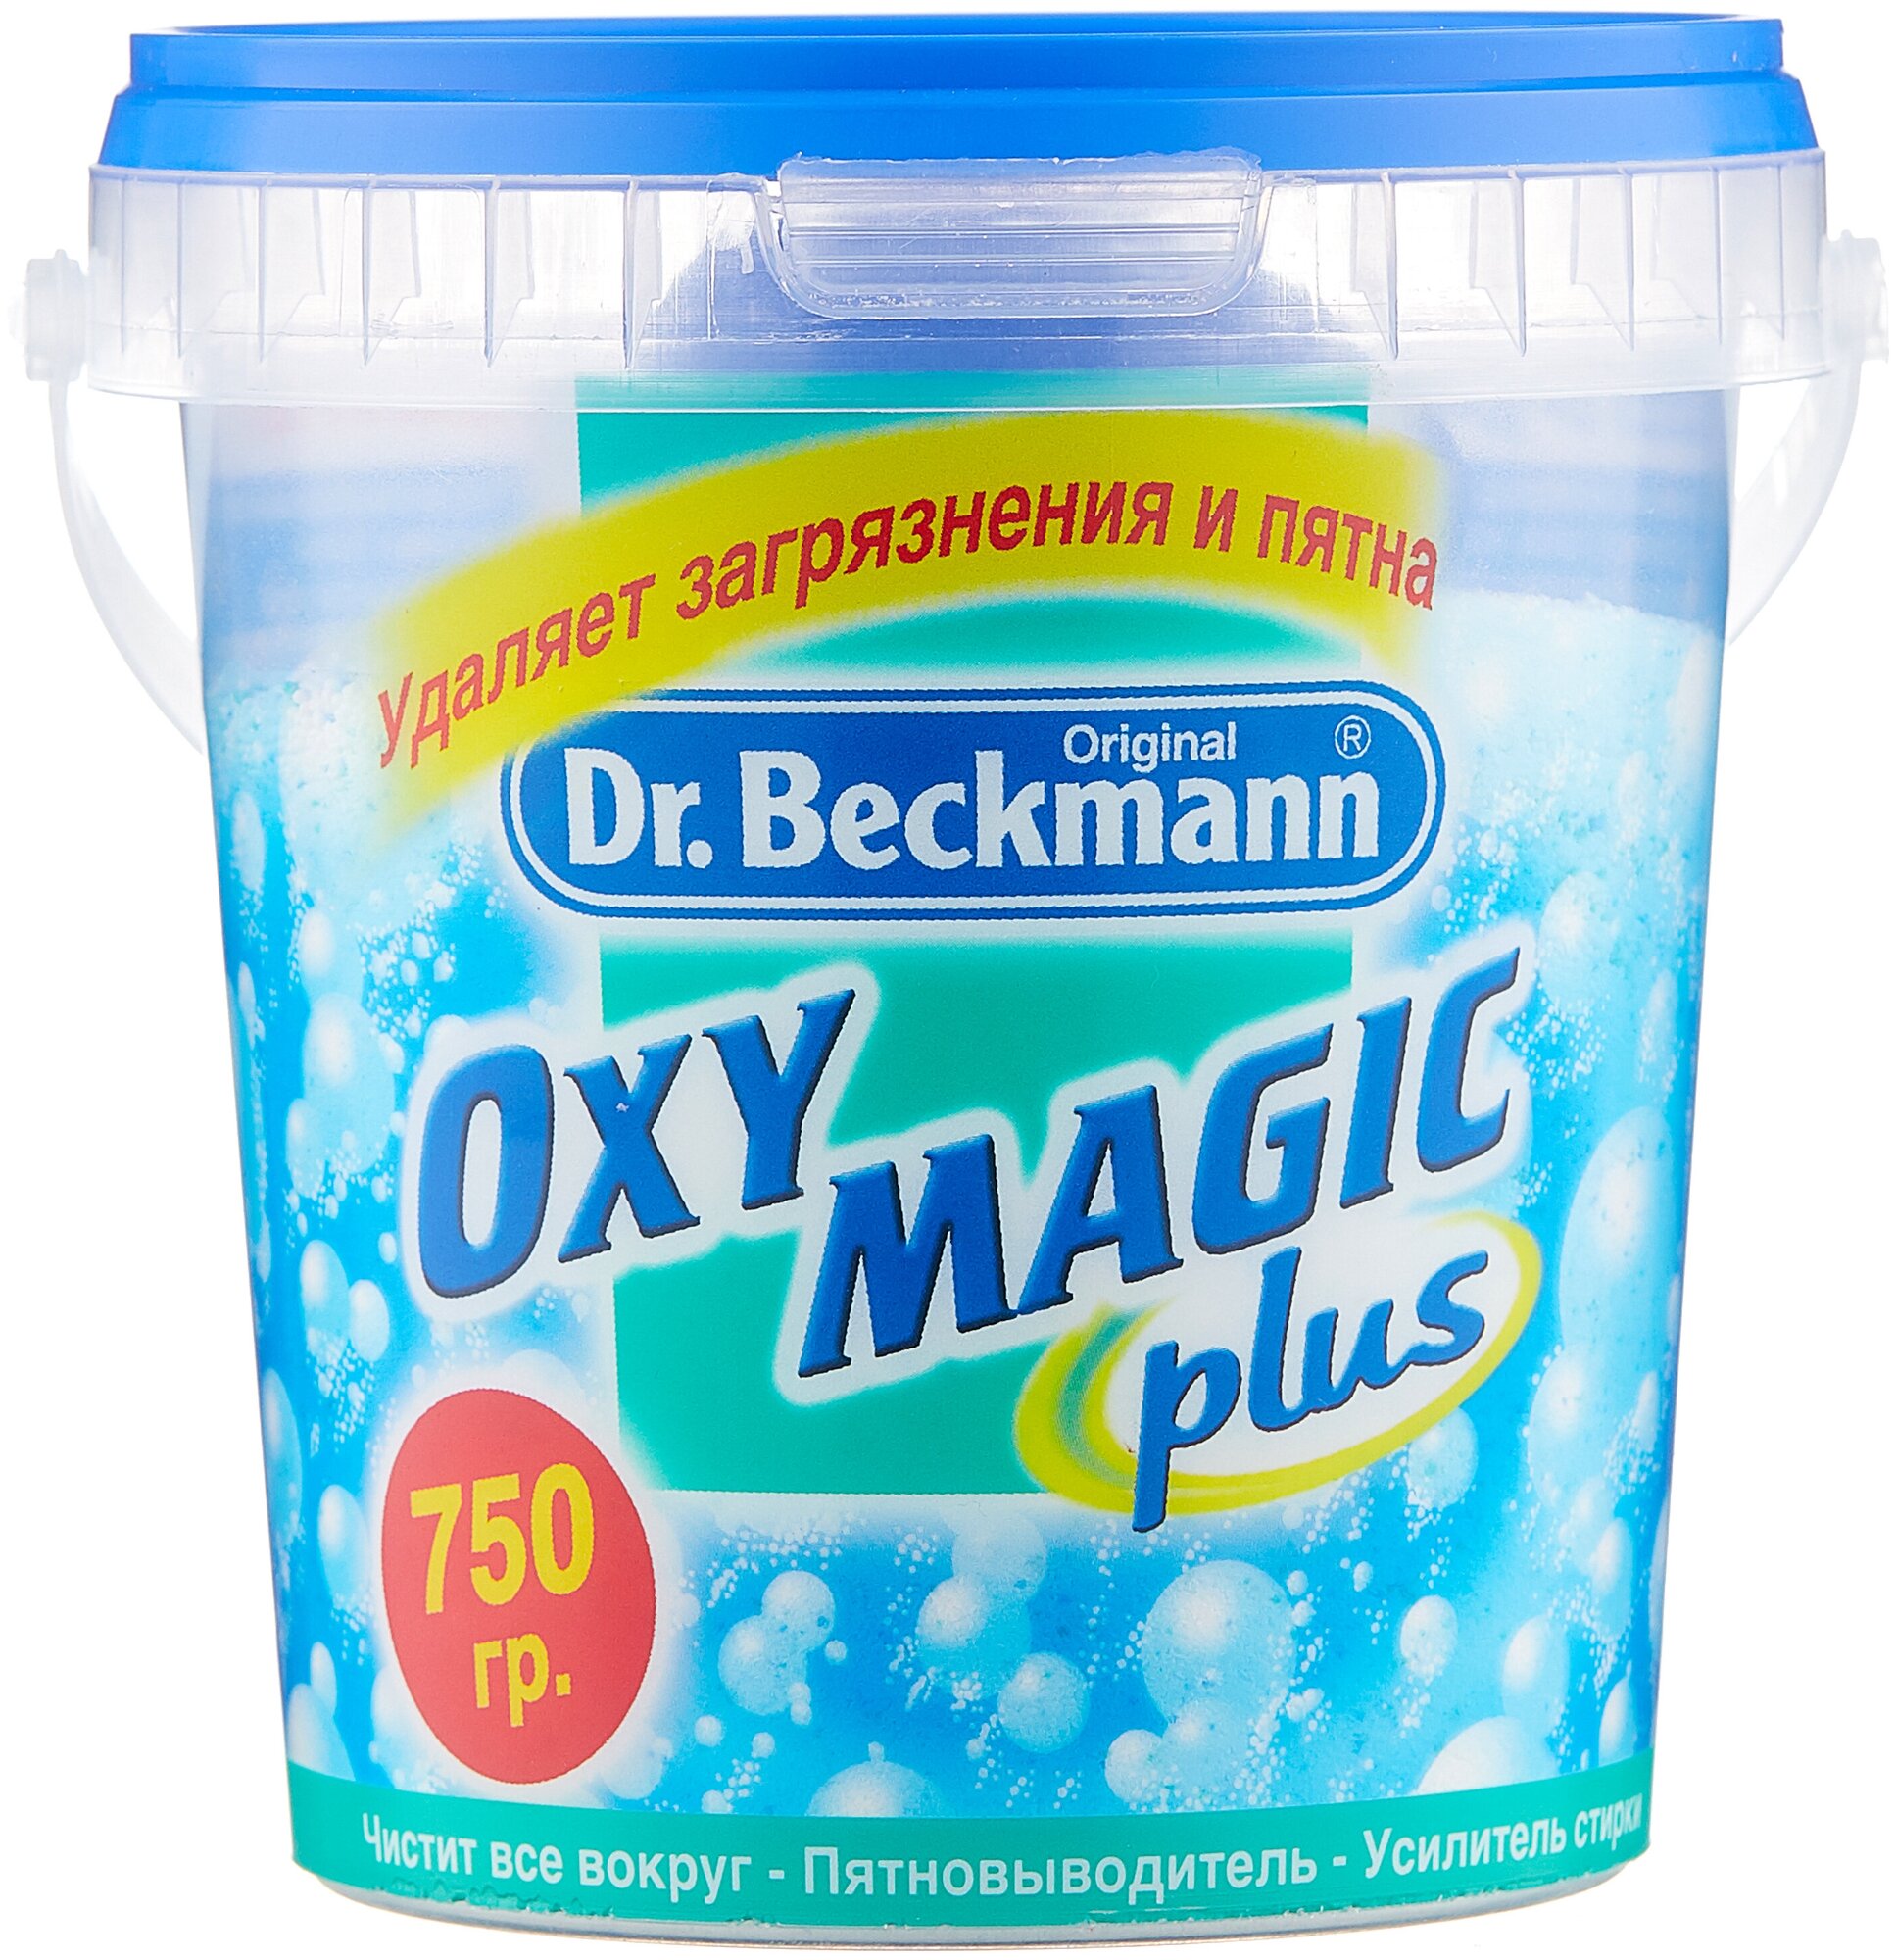    Oxy magic plus, 1000, Dr.Beckmann